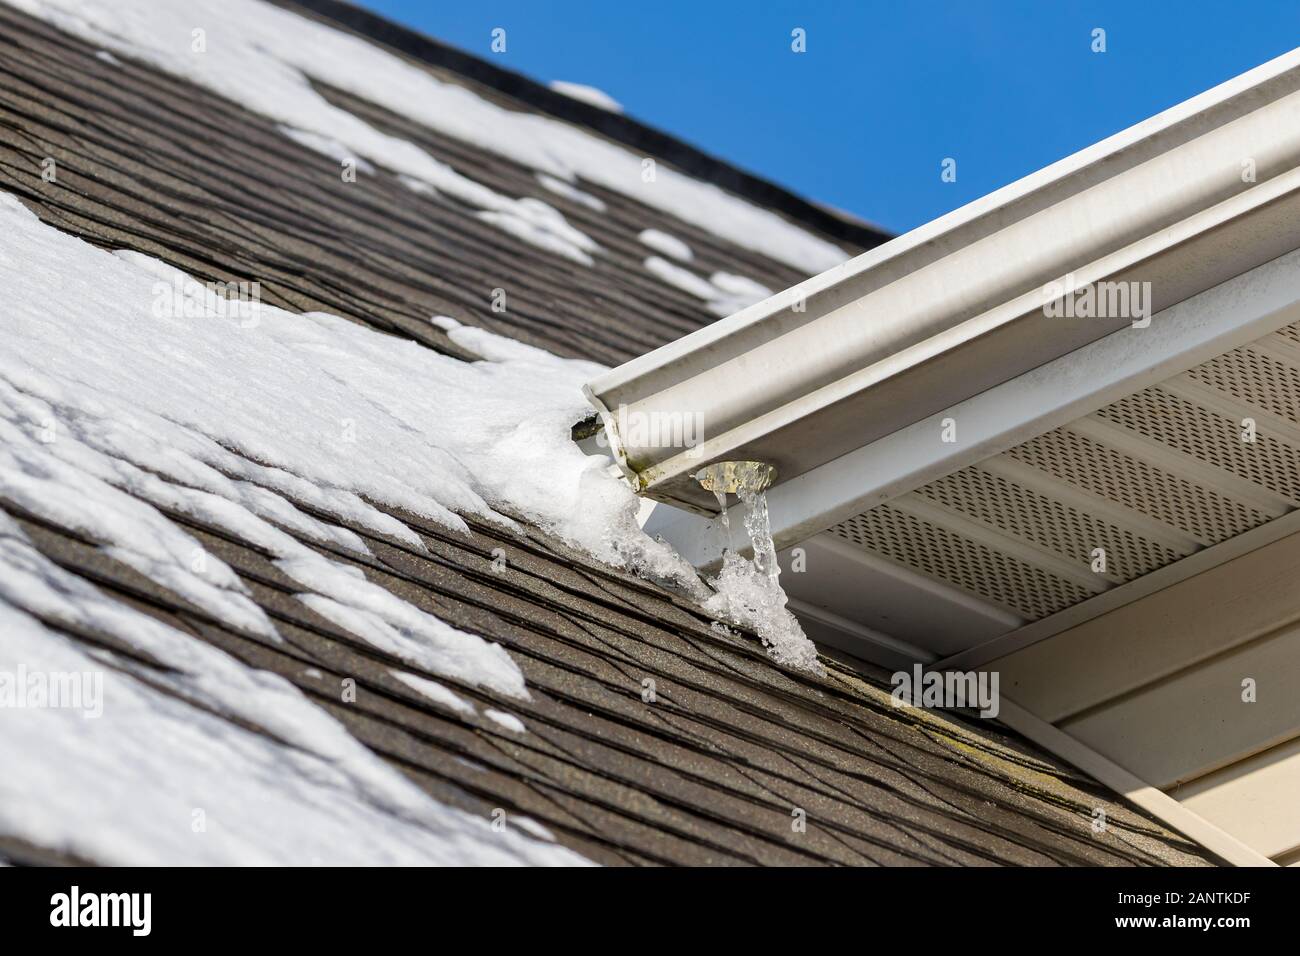 Schmelzender Schnee auf dem Dach des Hauses hat Eis auf Schindeln und Eiszapfen gebildet, die an der Dachrinne hängen Stockfoto